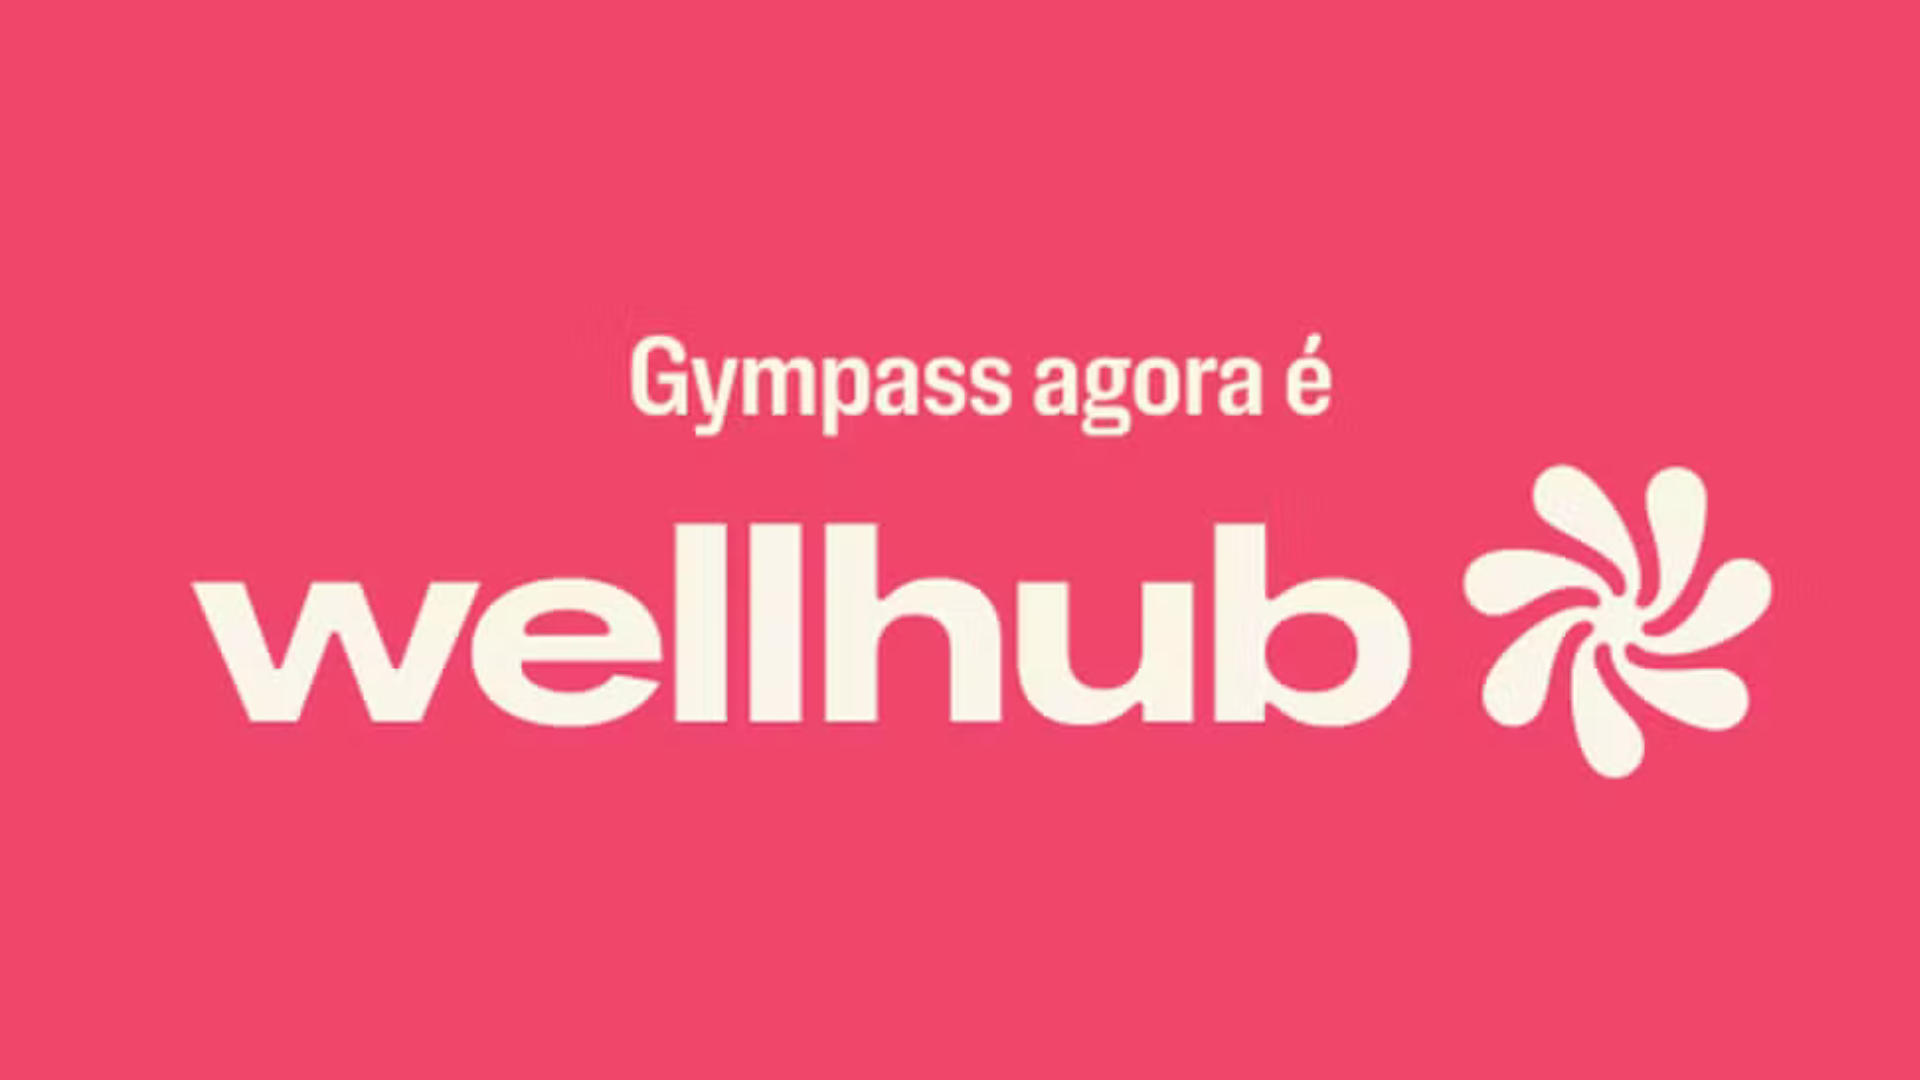 Gympass passa por rebranding e muda nome para Wellhub